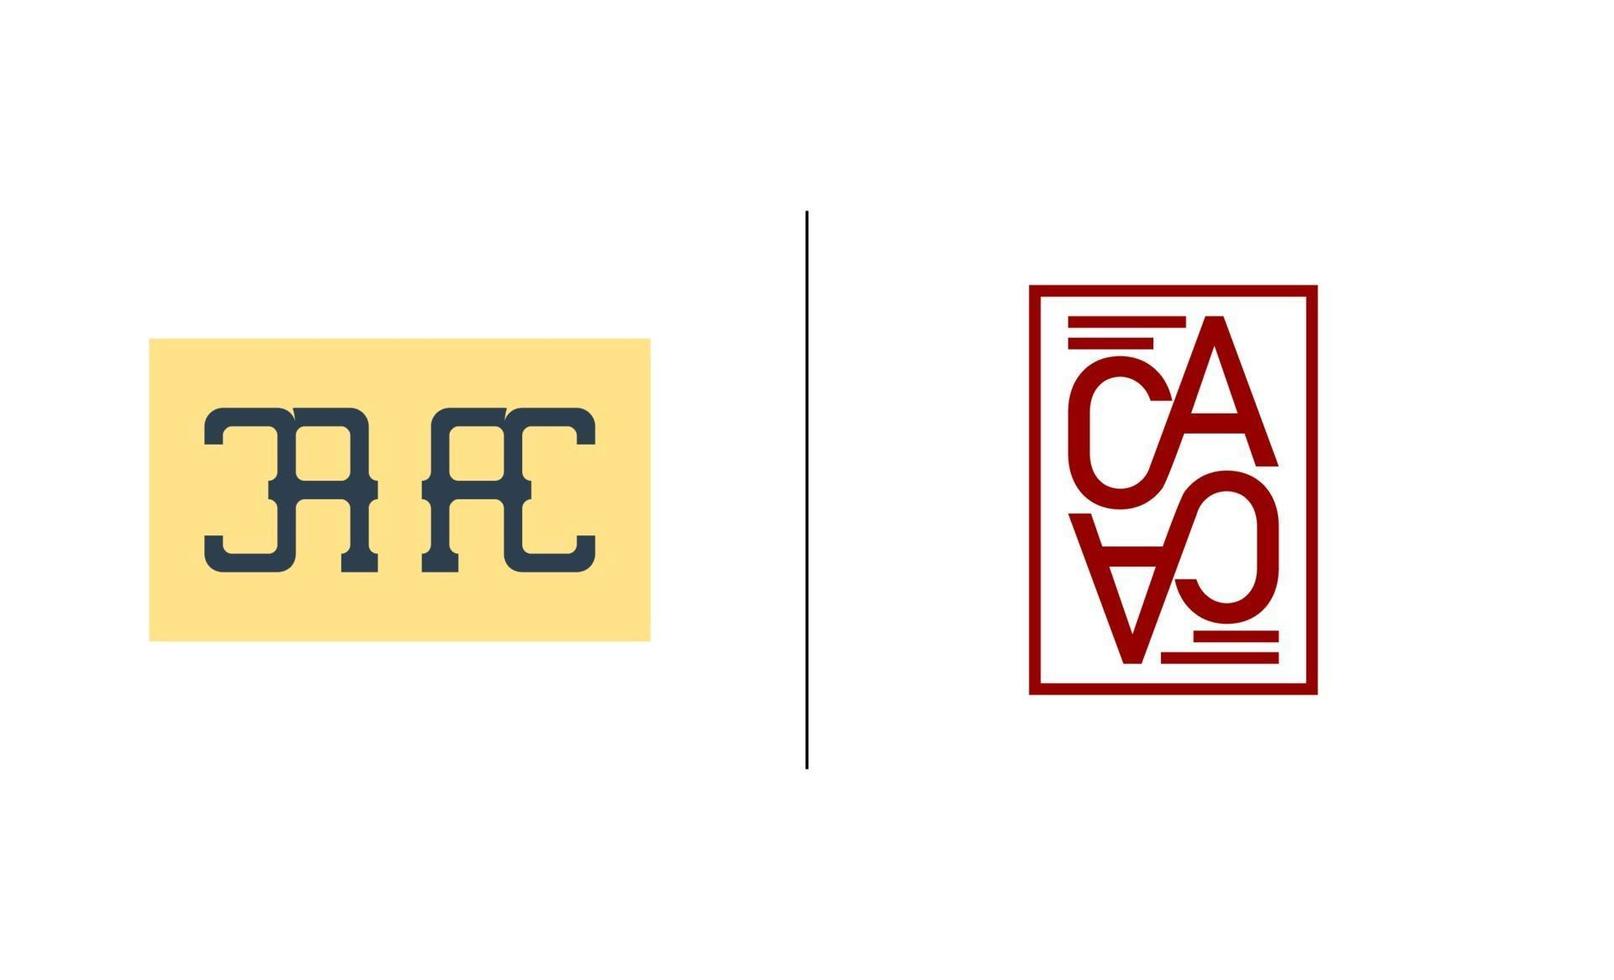 initial ac, ca, a, c logo mall vektorillustration vektor